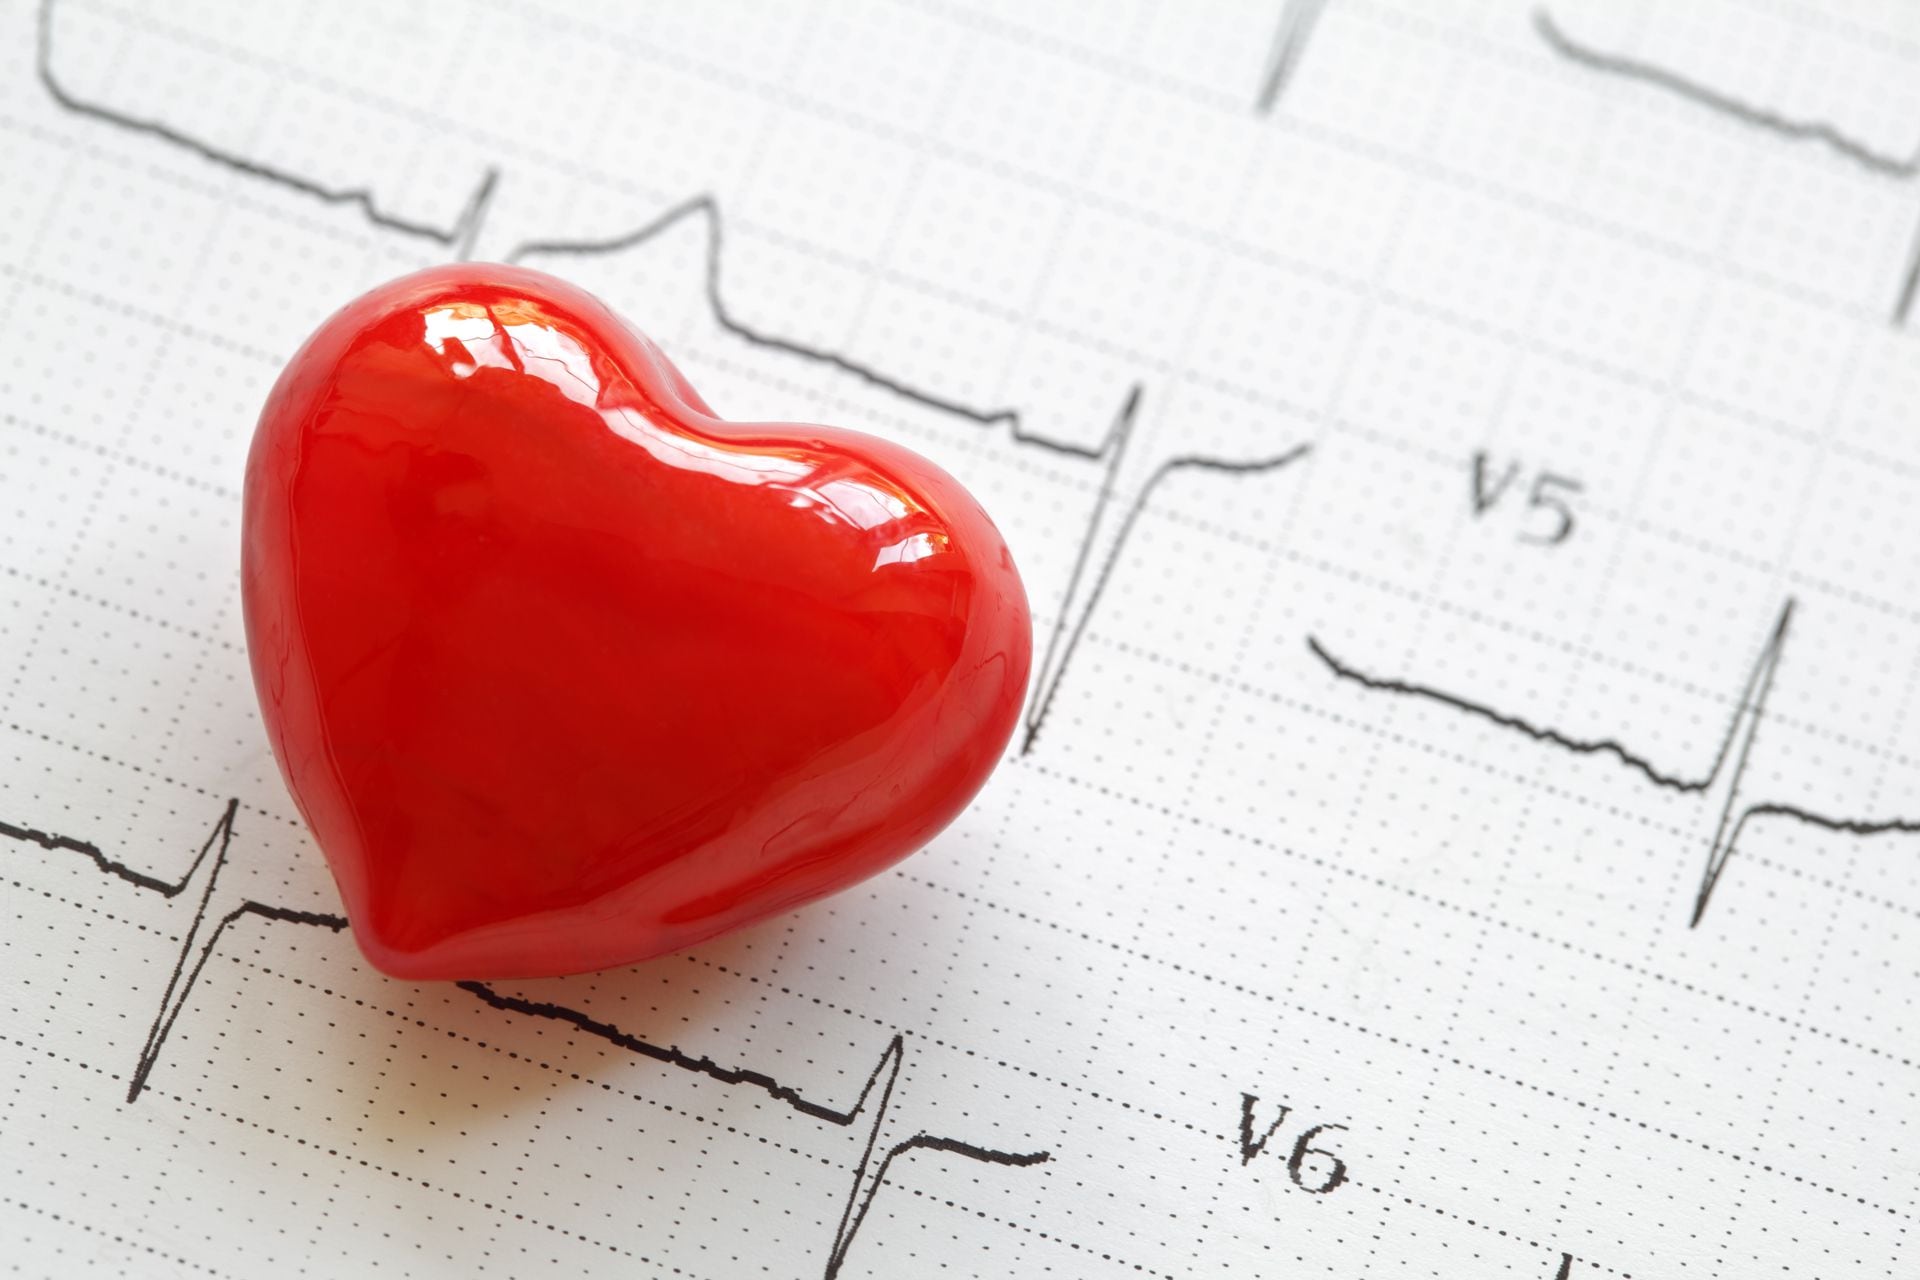 El electrocardiograma es el registro eléctrico de la actividad cardíaca desde la superficie corporal  (iStock)